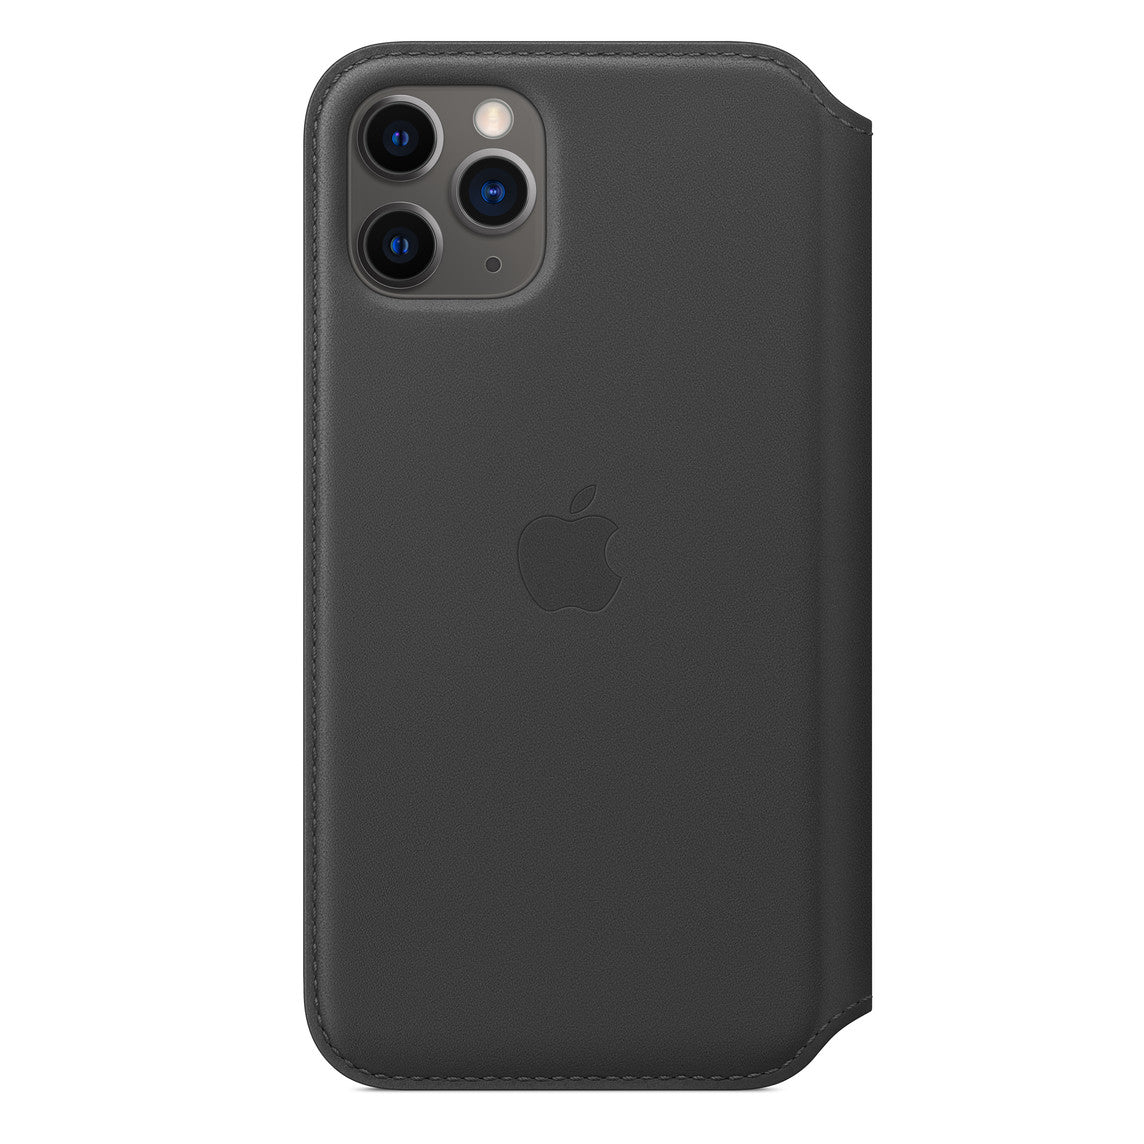 Apple iPhone 11 Pro Leather Folio Case - Black Black New - Sealed